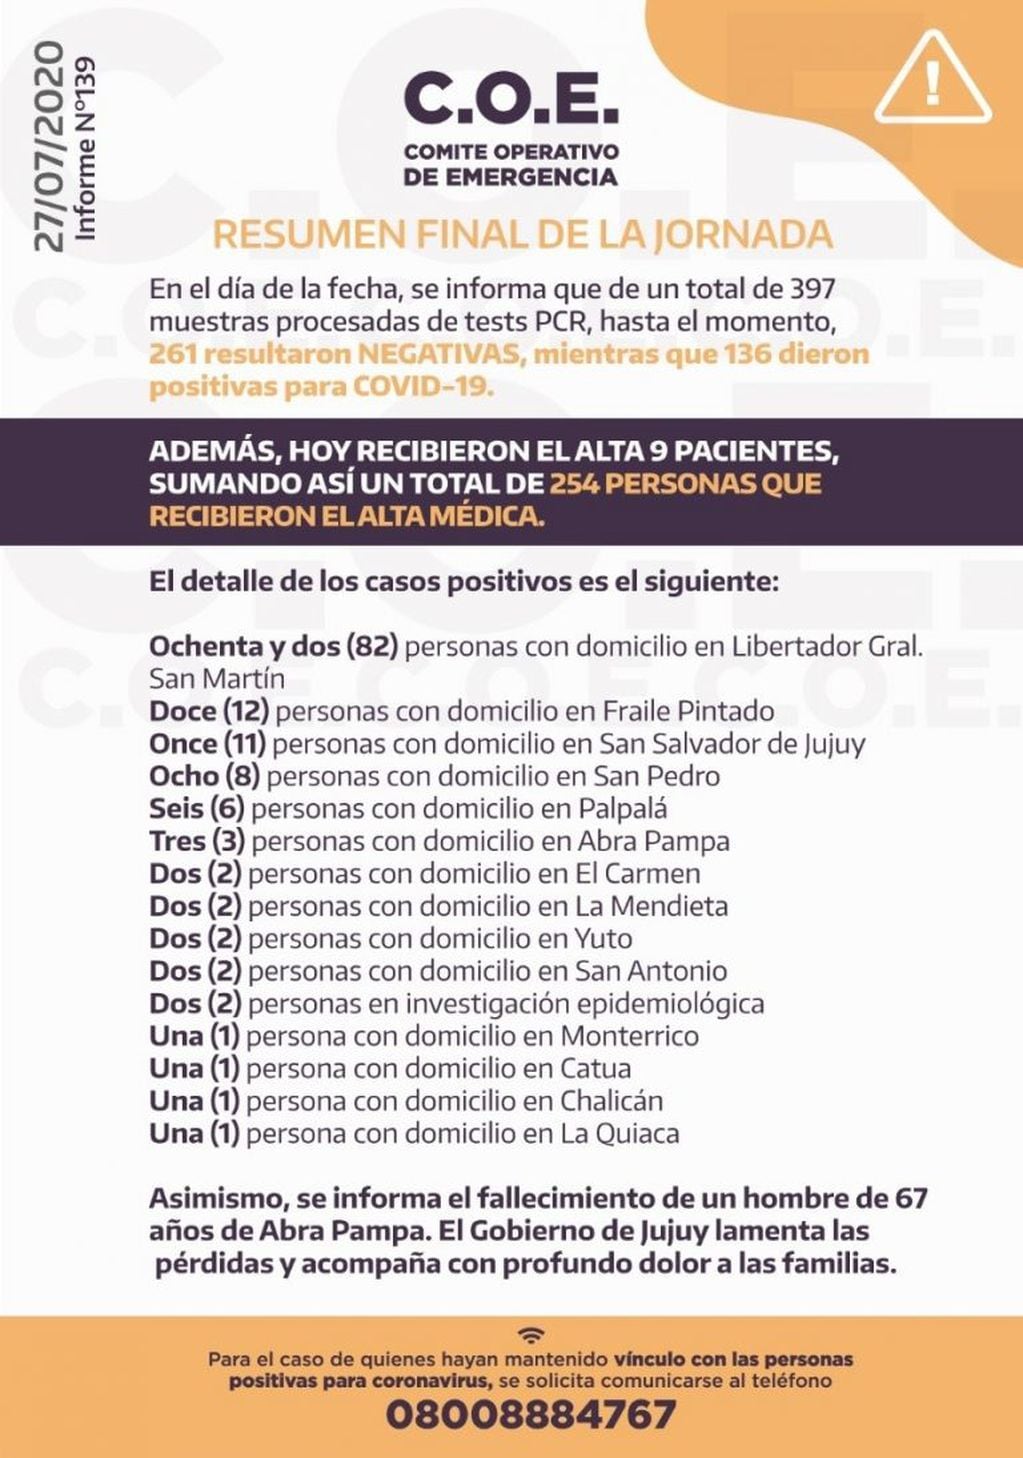 El COE Jujuy dio a conocer su reporte N° 139, correspondiente al lunes 27 de julio.